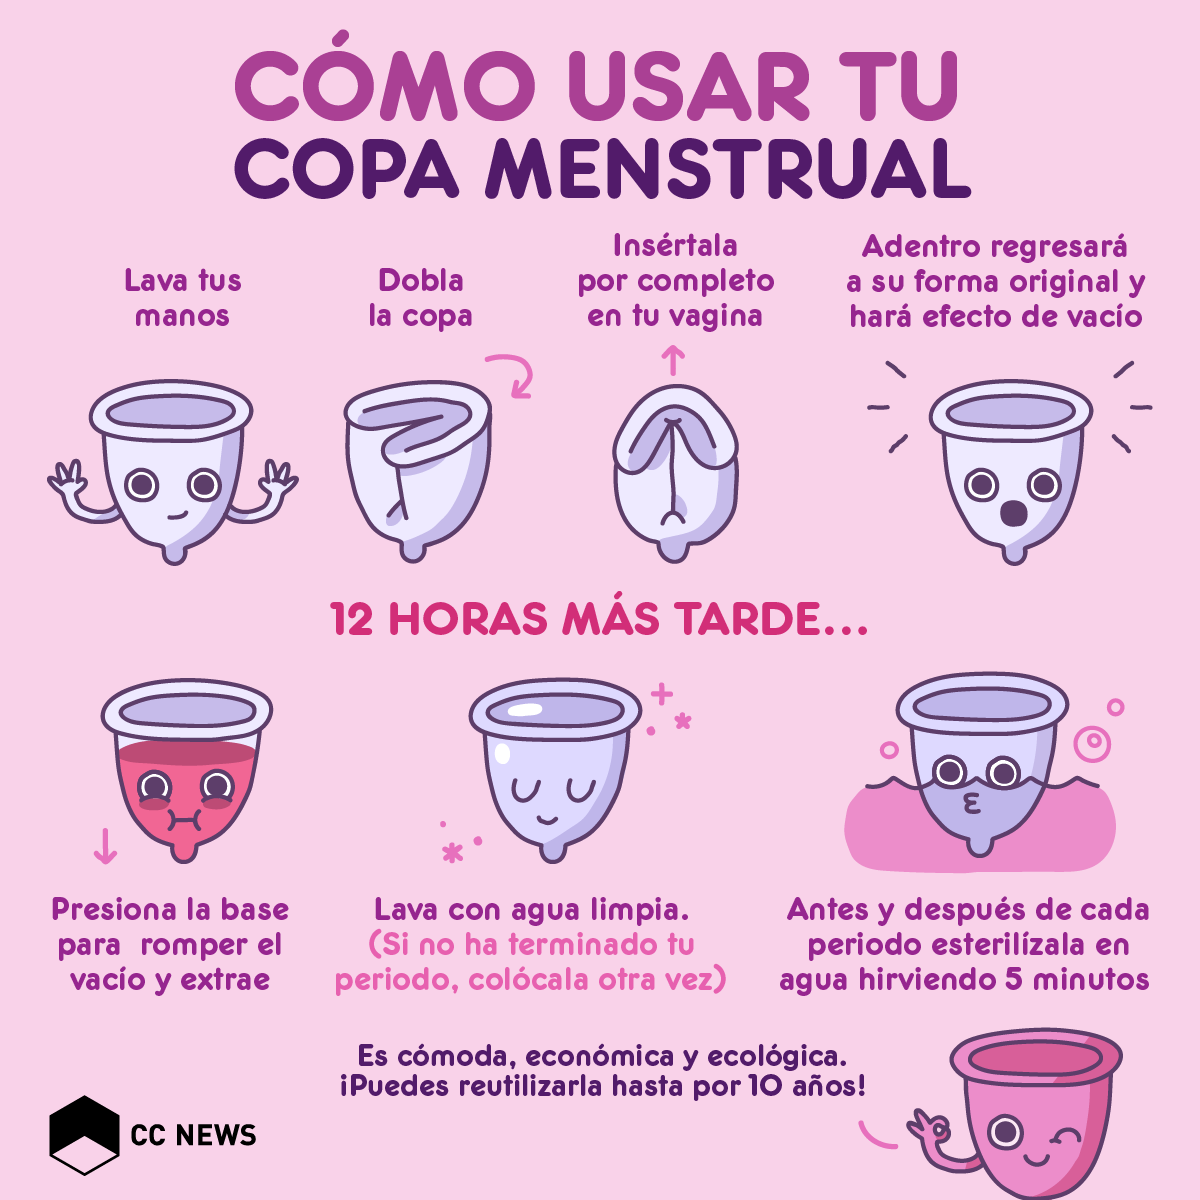 Qué es y se copa menstrual?